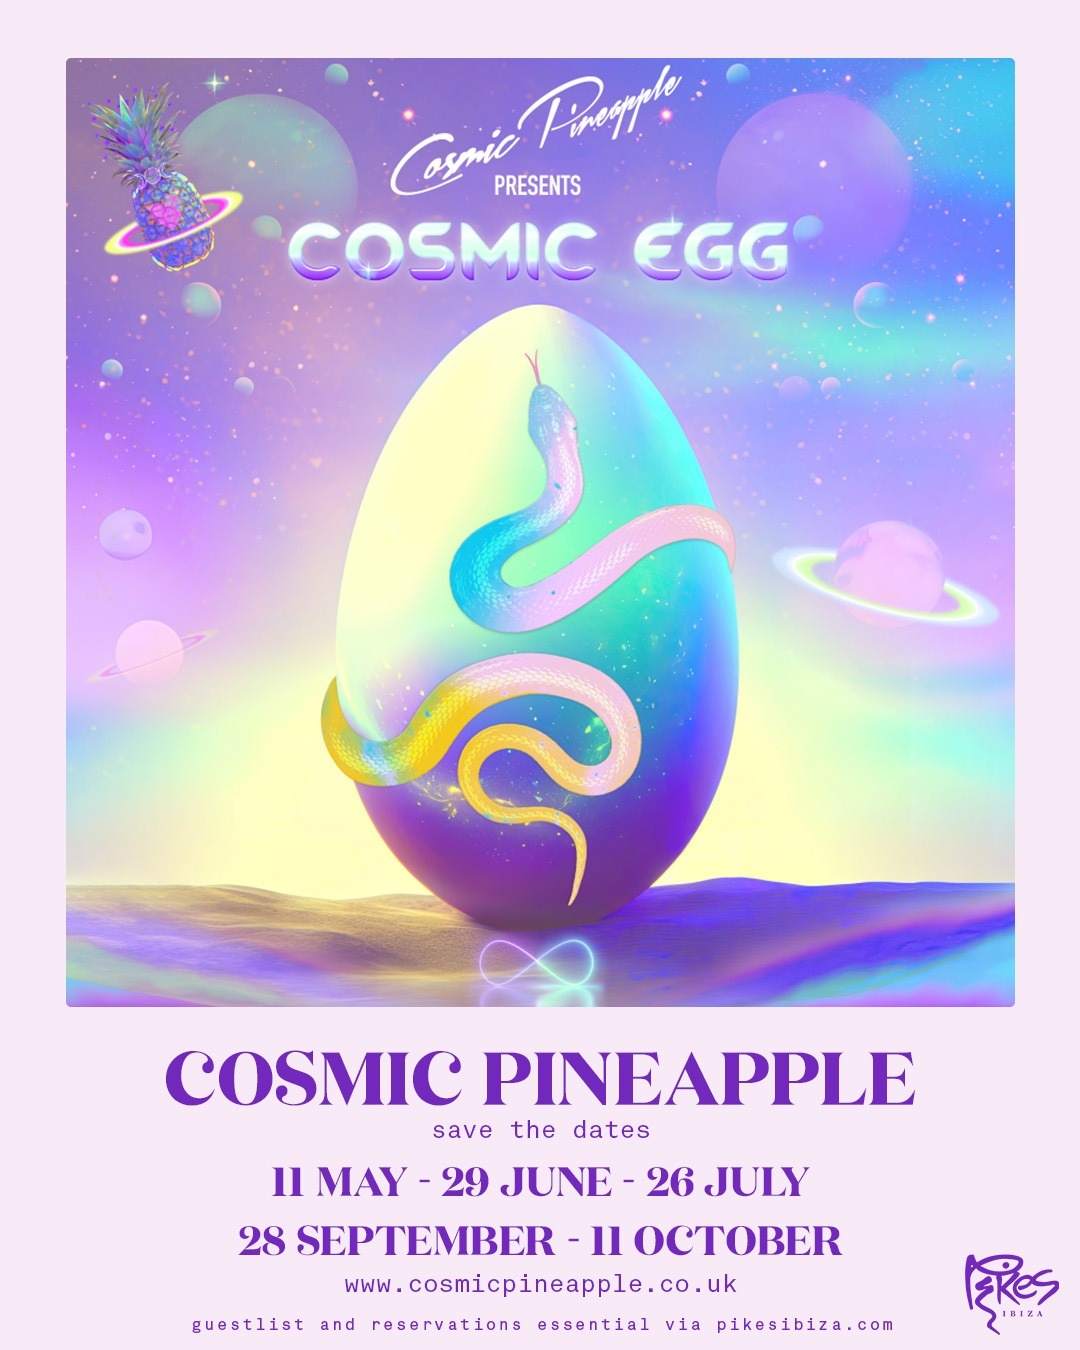 Cosmic Pineapple presents Cosmic Egg - フライヤー表